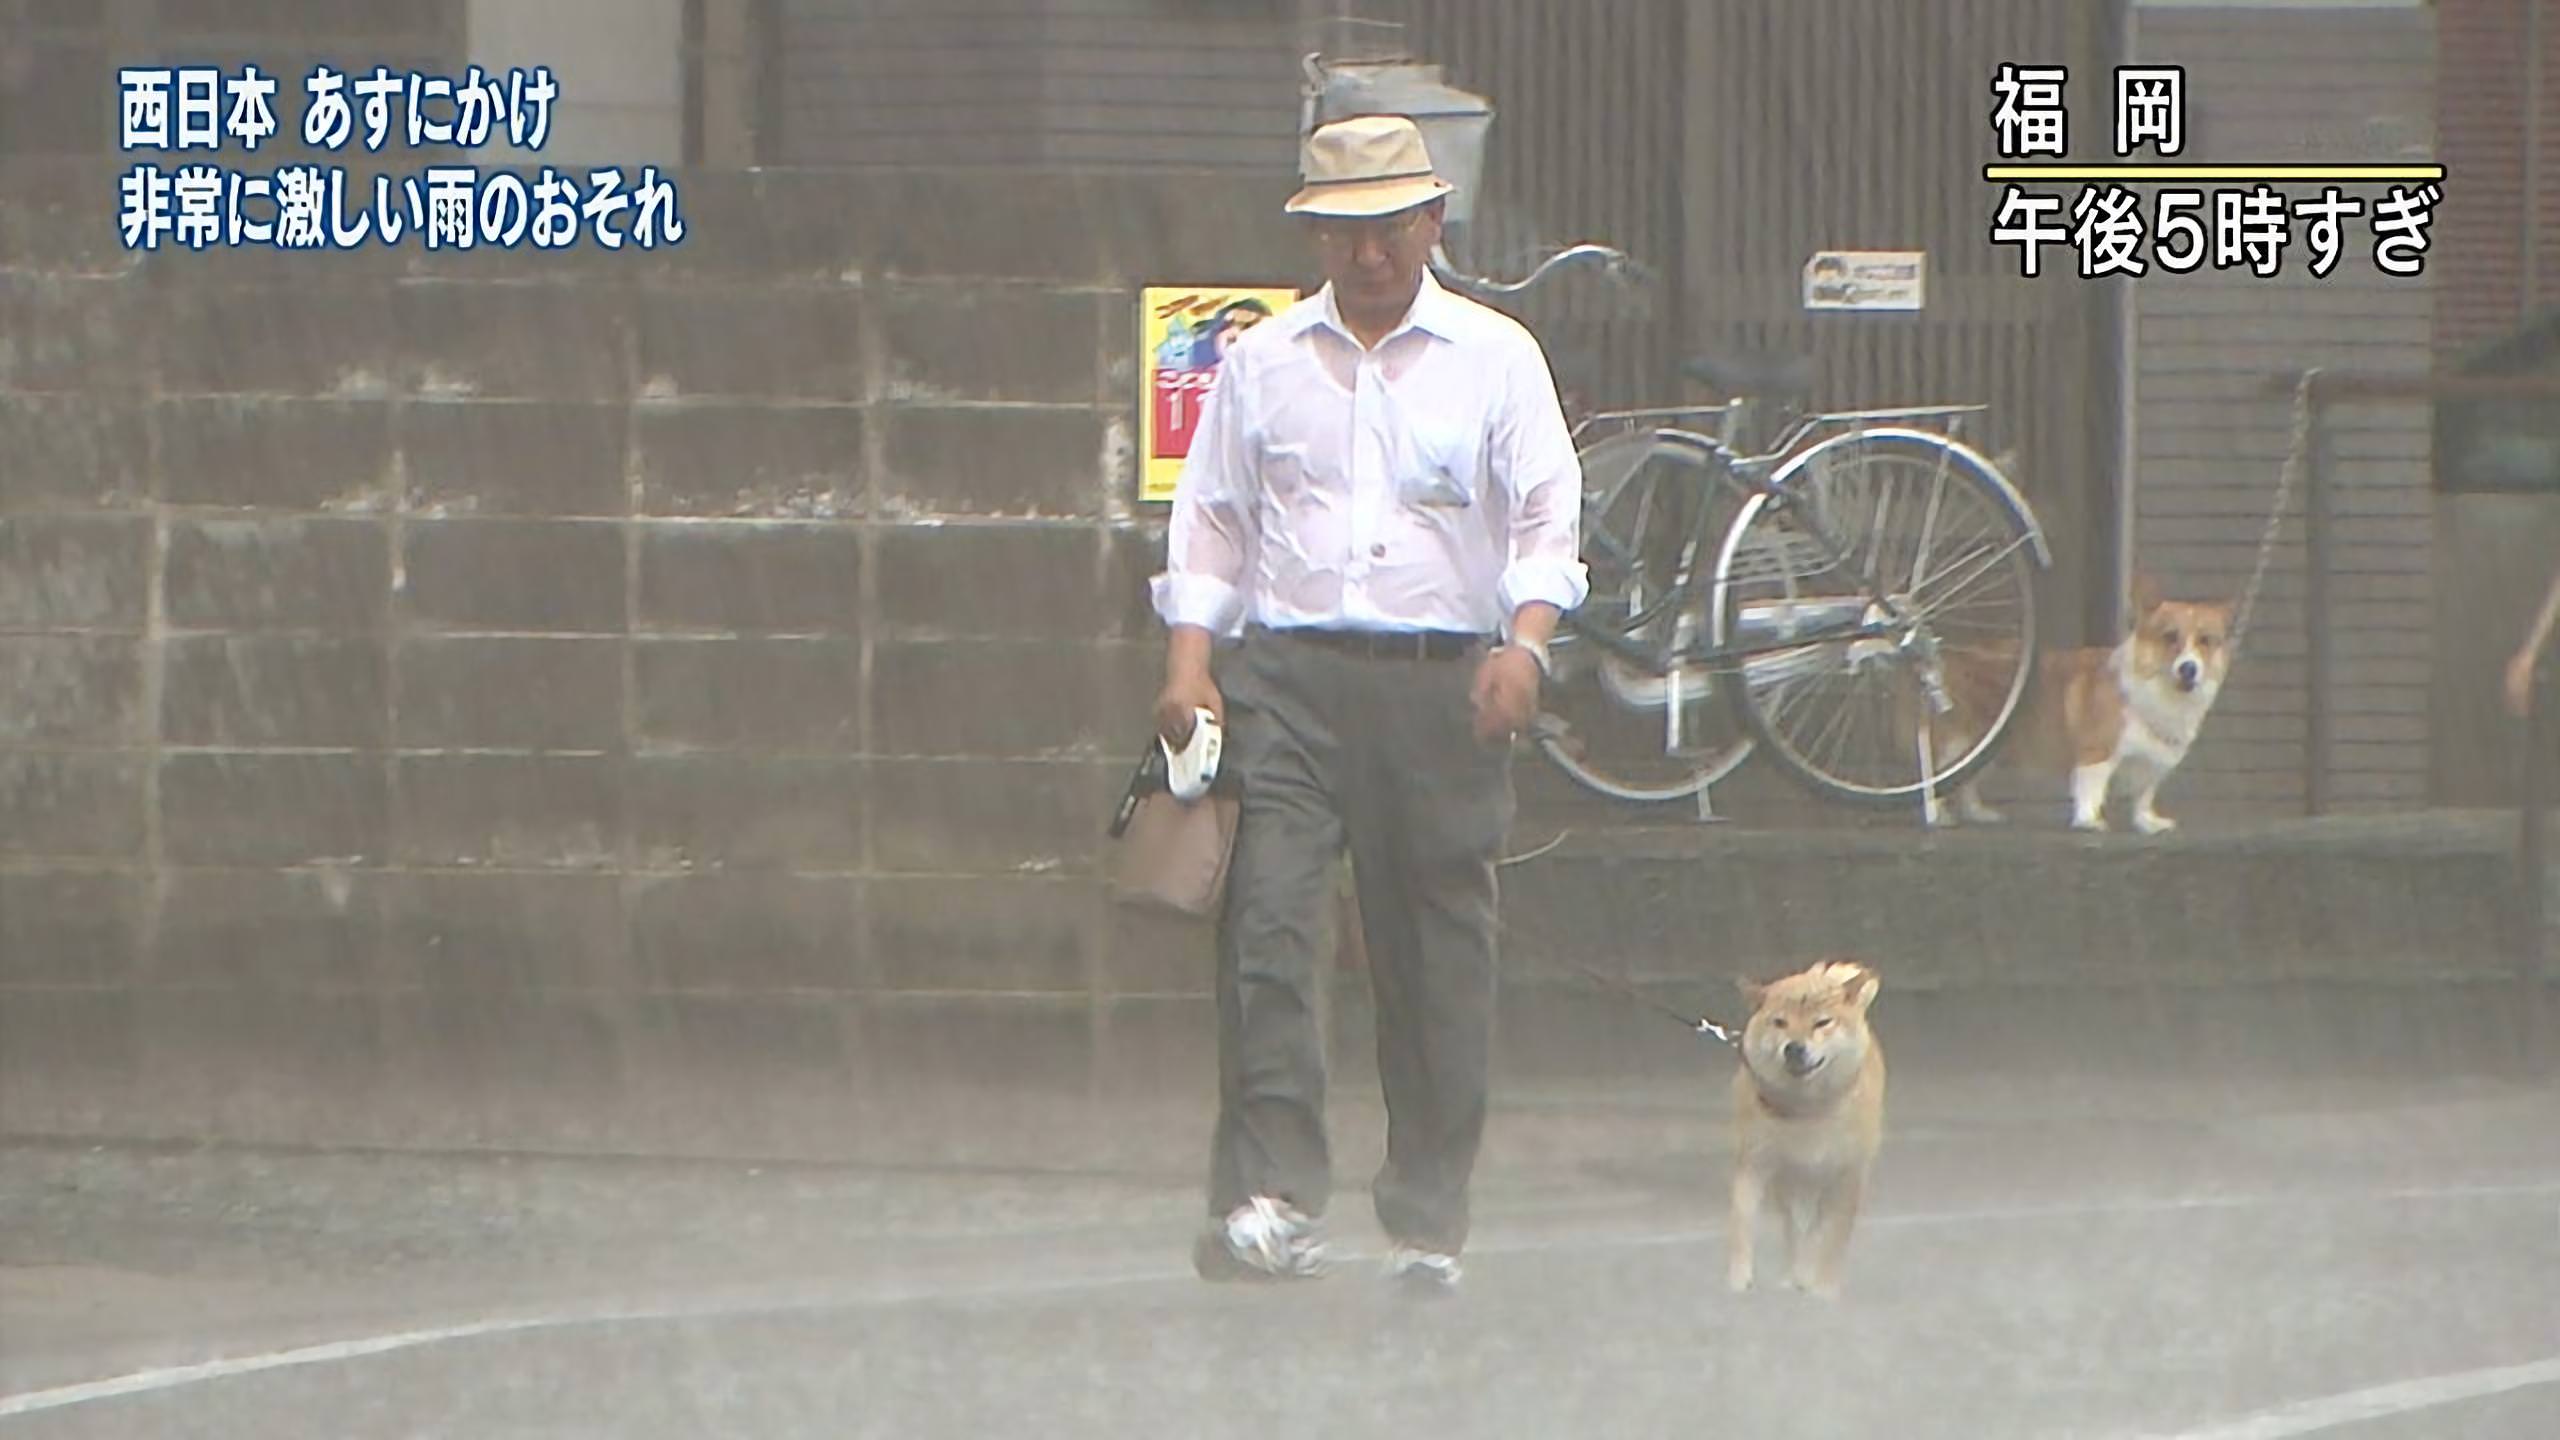 豪雨に散歩する柴犬とそれを見つめるコーギーがおもしろい 笑